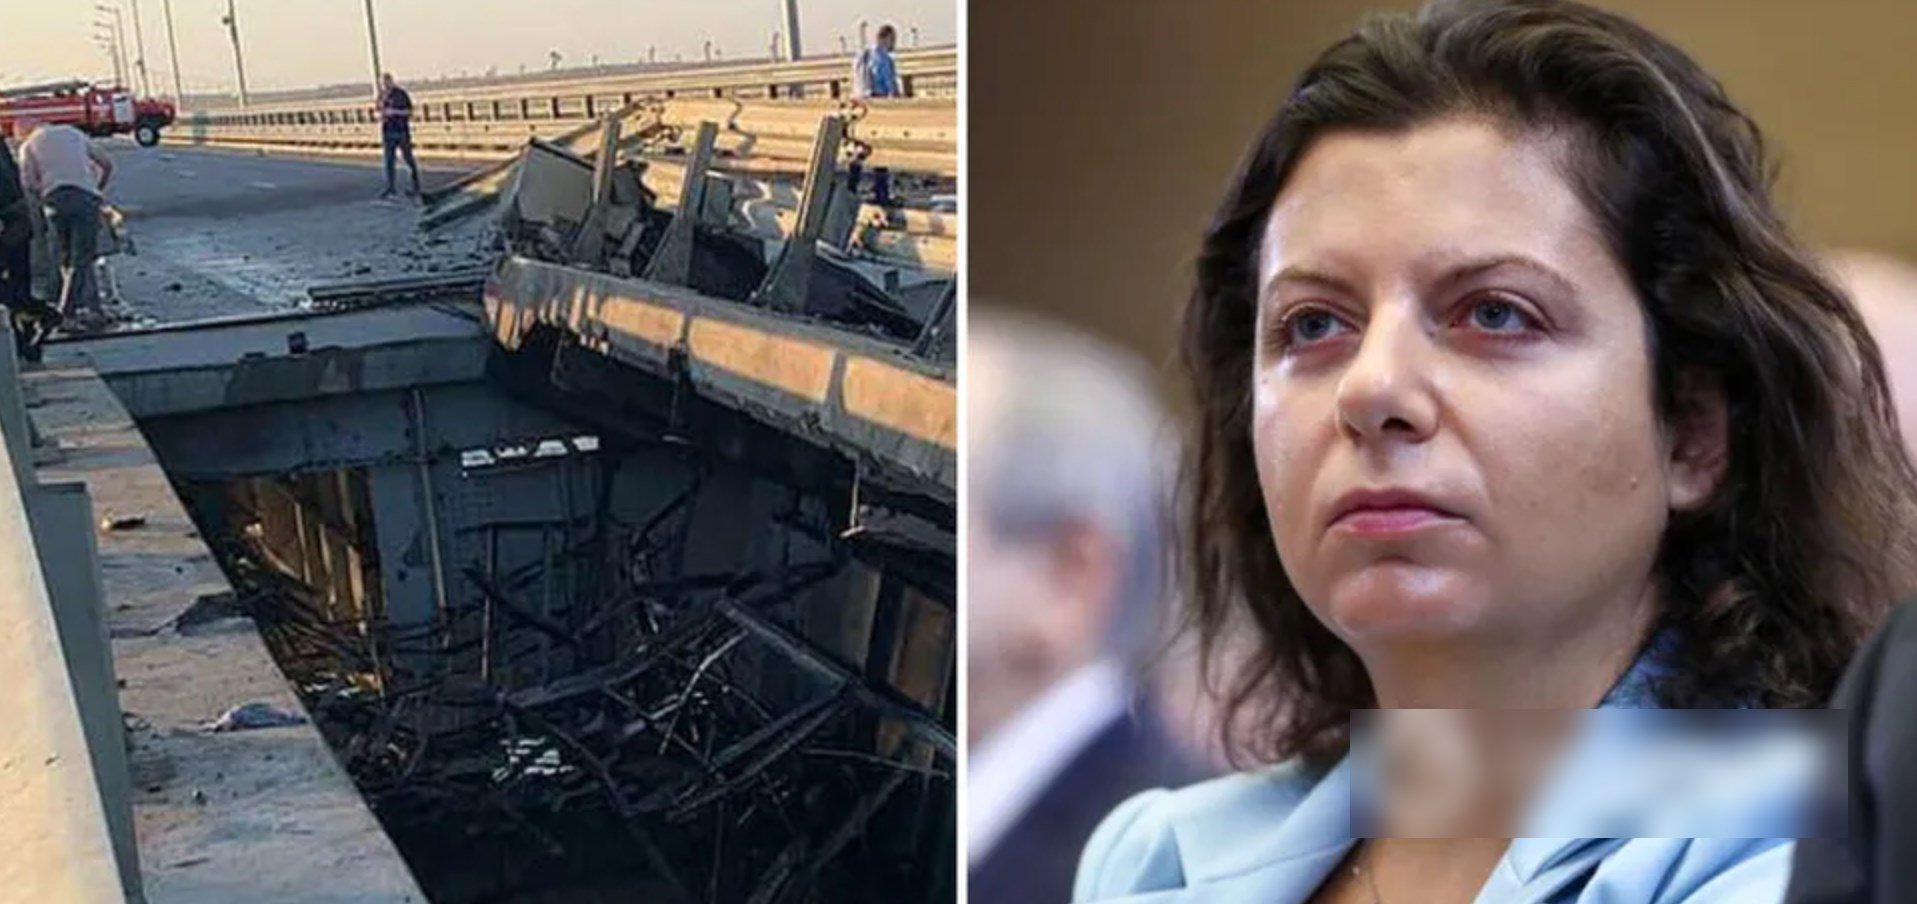 Пр0nаrандuстка Симоньян влаштувала істерику через вибухи в Криму і розмріялася про удар по Тауерському мосту